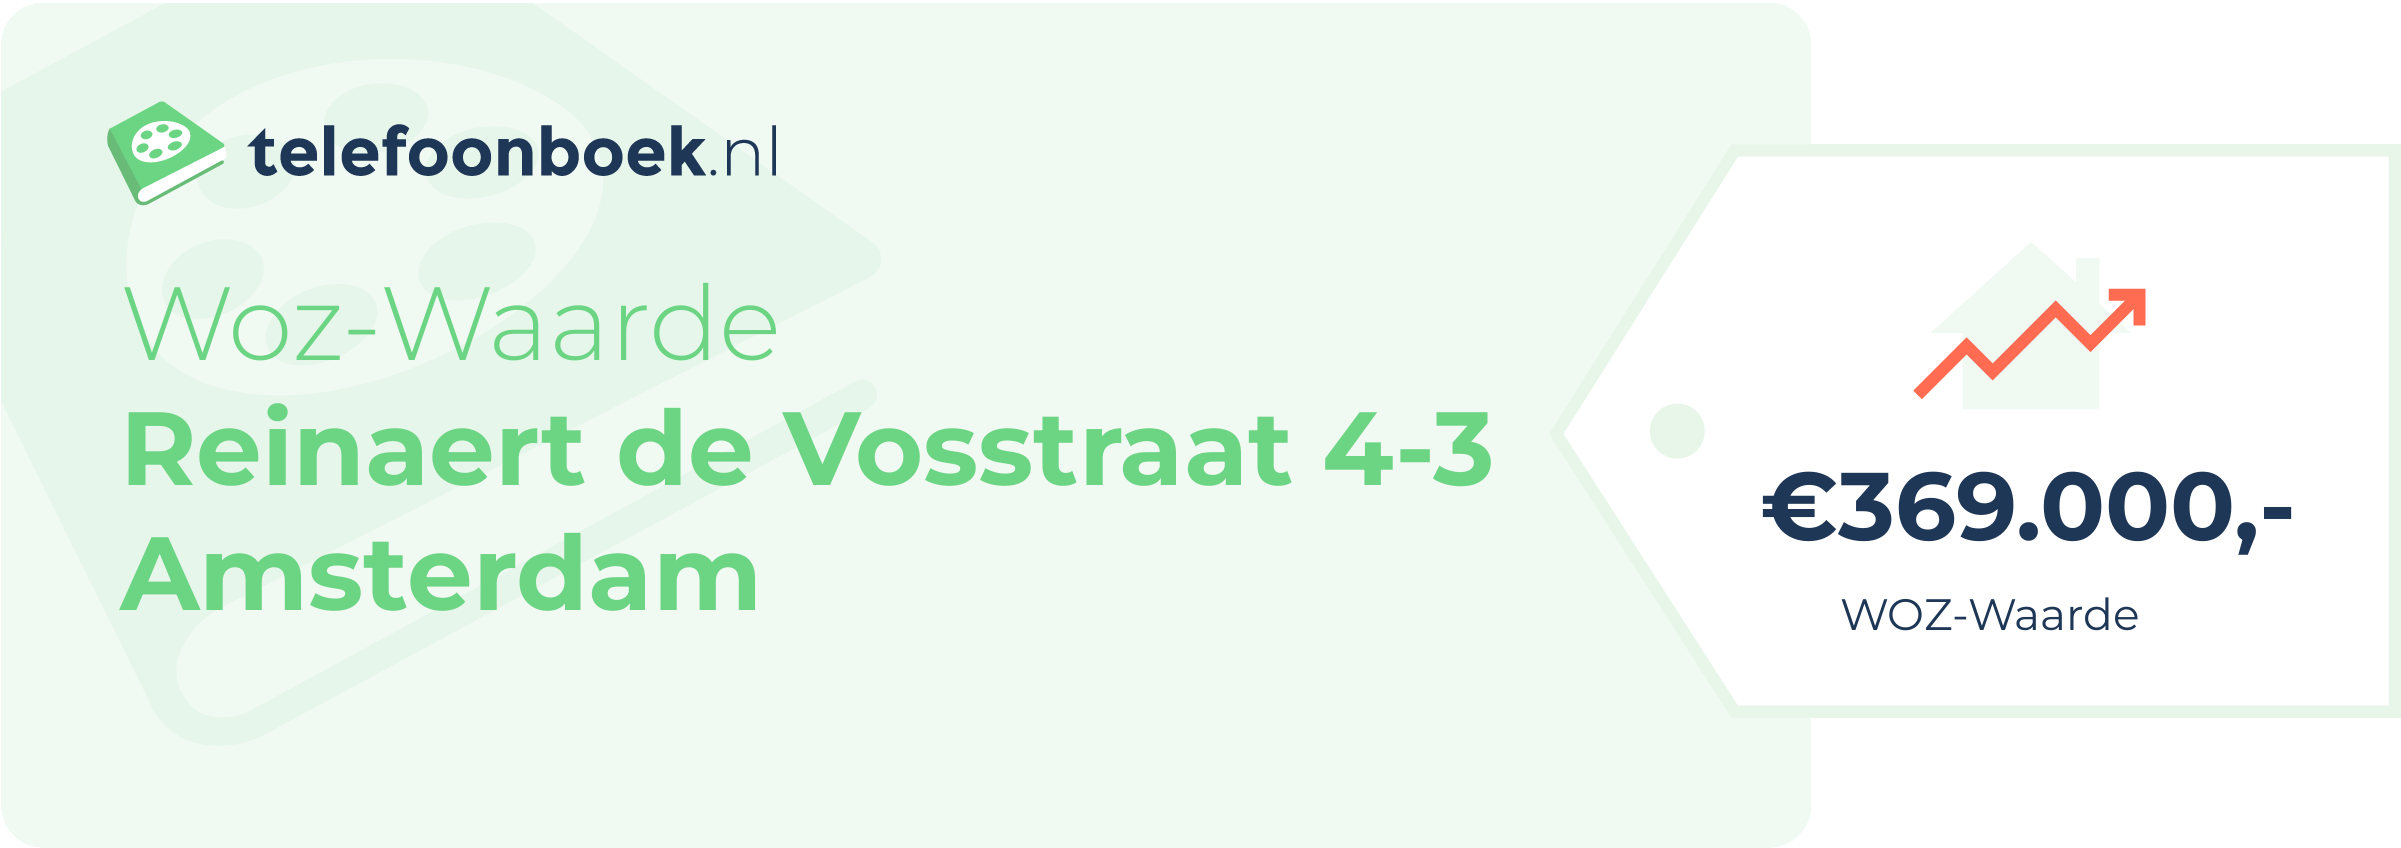 WOZ-waarde Reinaert De Vosstraat 4-3 Amsterdam